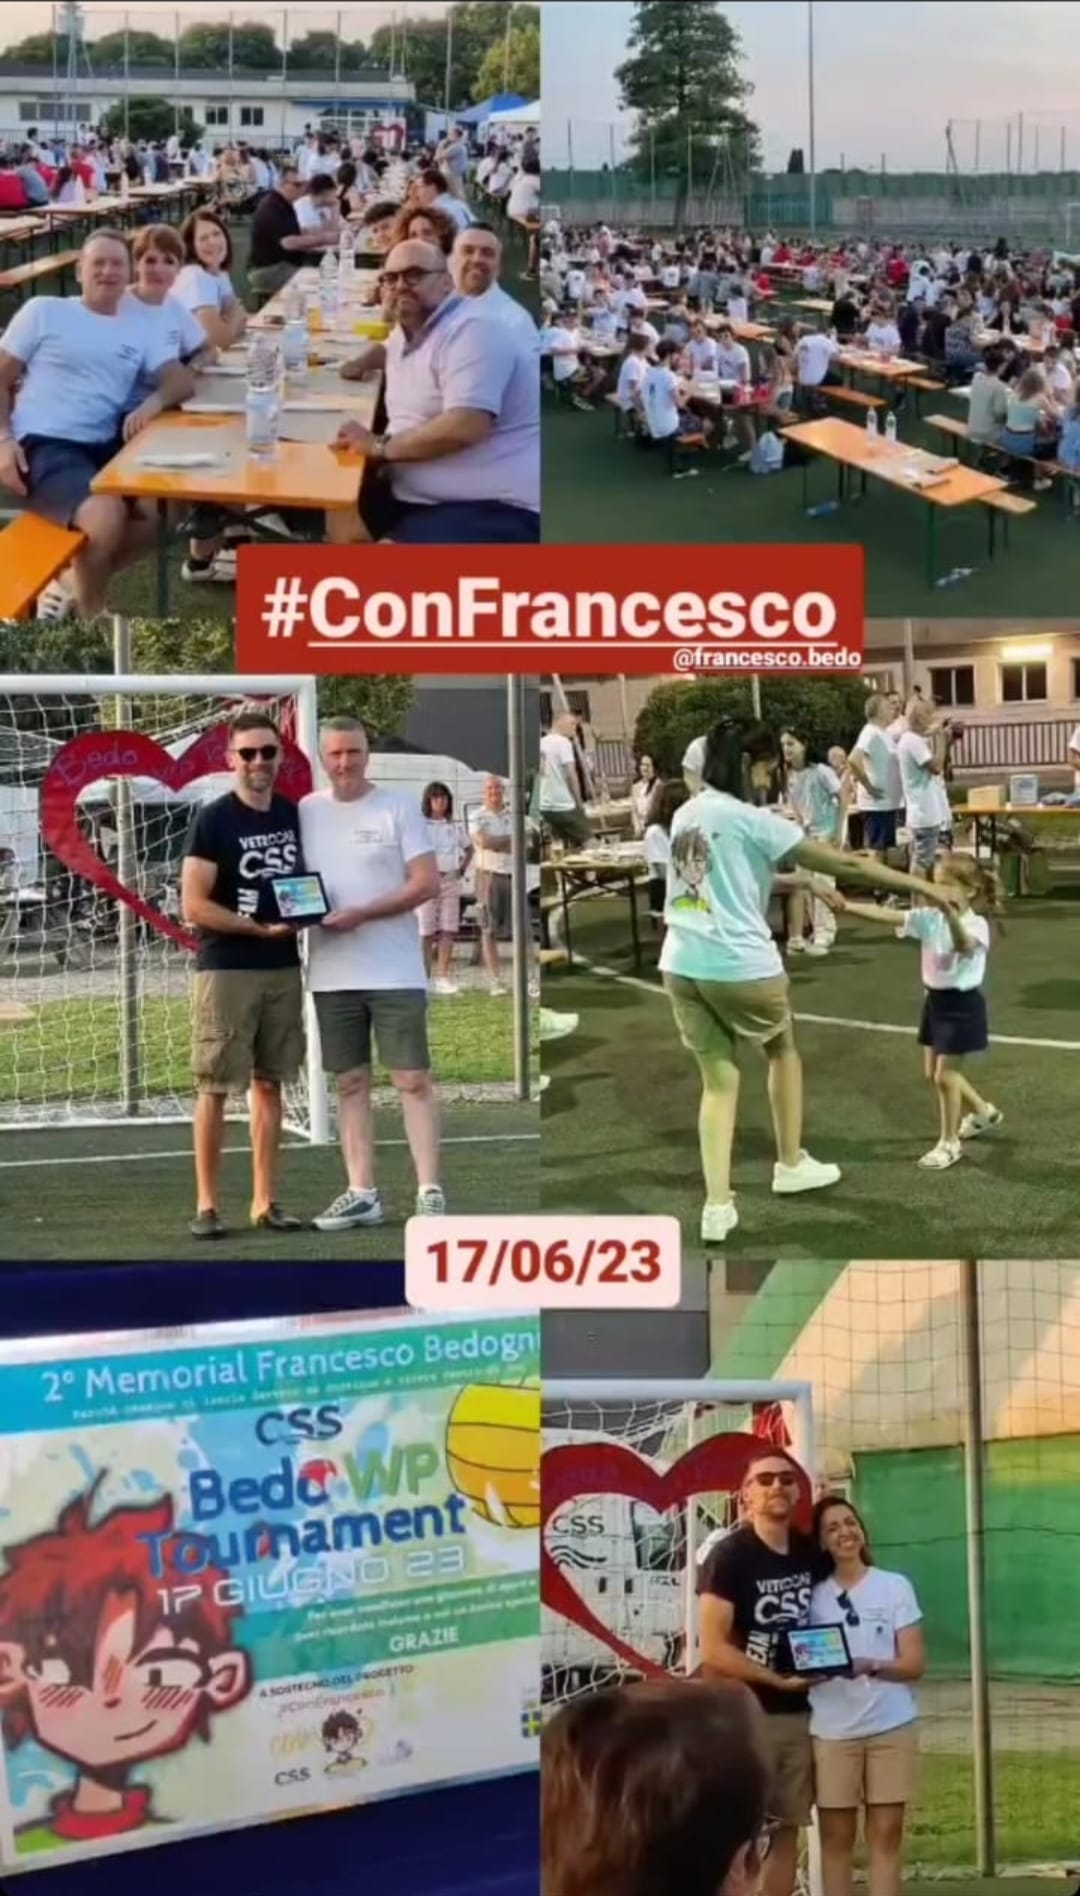 Ieri, 17.06.2023, secondo memorial e presentazione del progetto #ConFrancesco: includiAmo attraverso lo sport

Più di 700 persone insieme c…